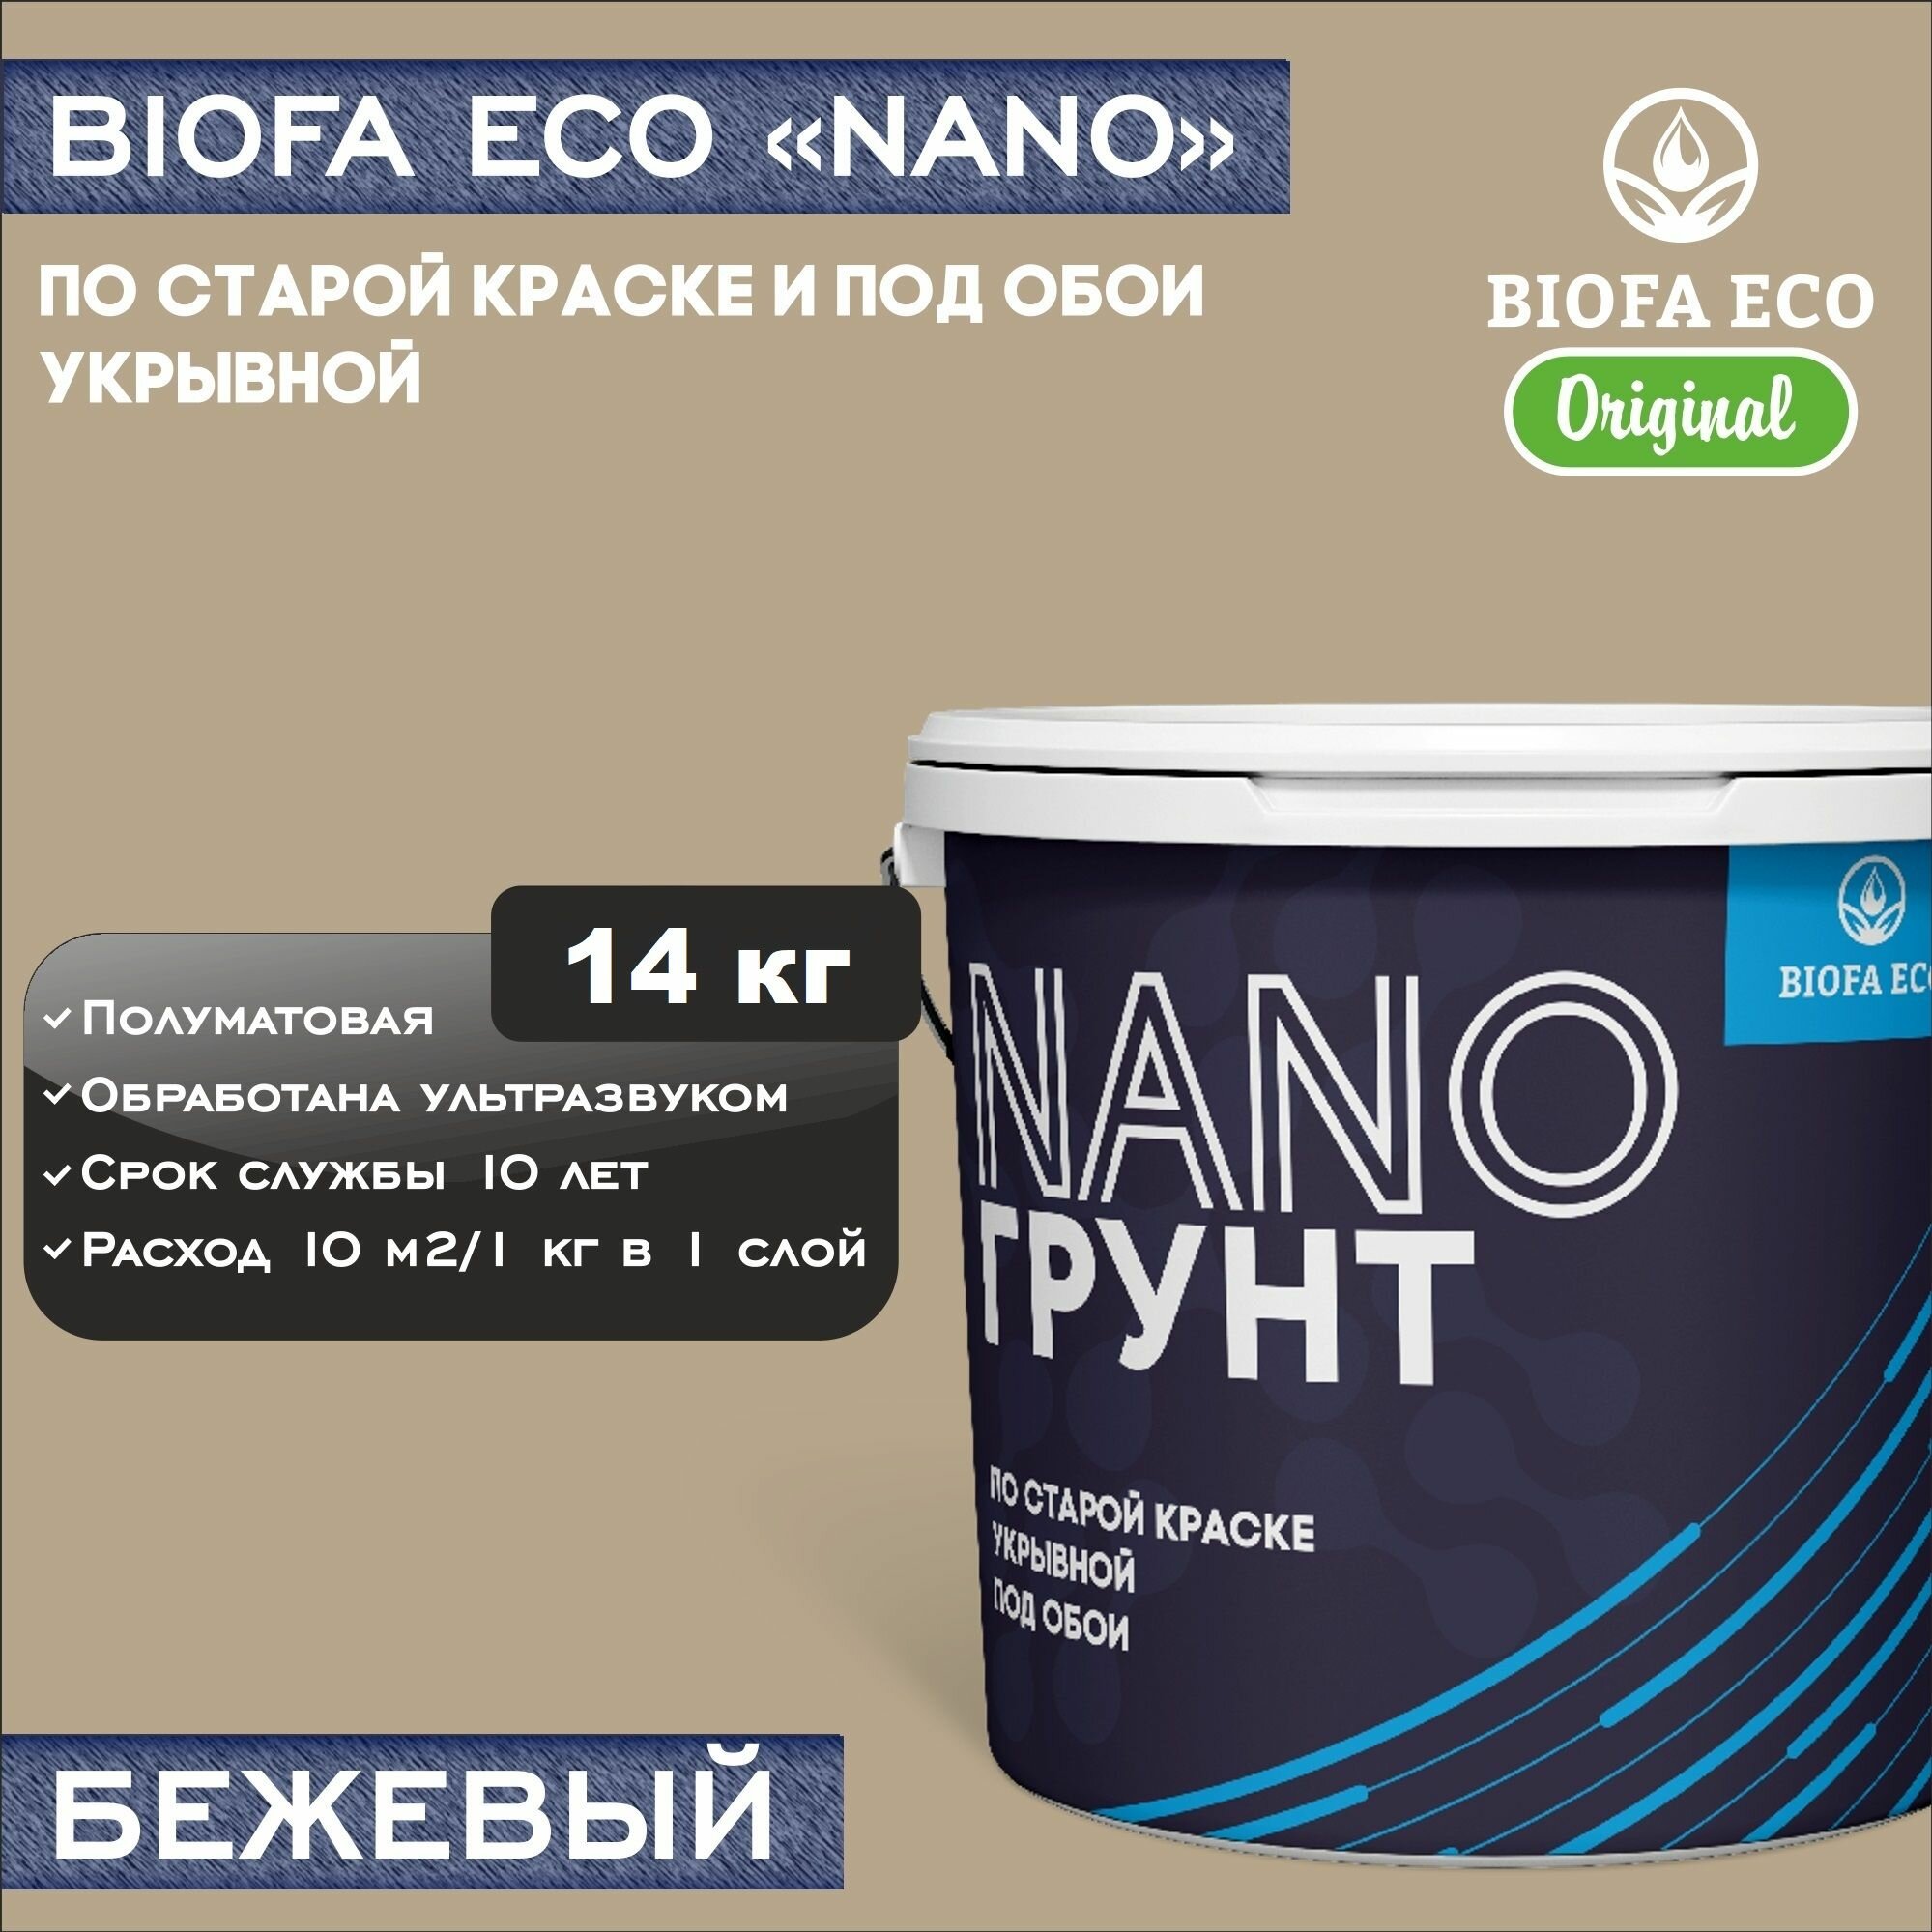 Грунт BIOFA ECO NANO укрывной под обои и по старой краске, адгезионный, цвет бежевый, 14 кг